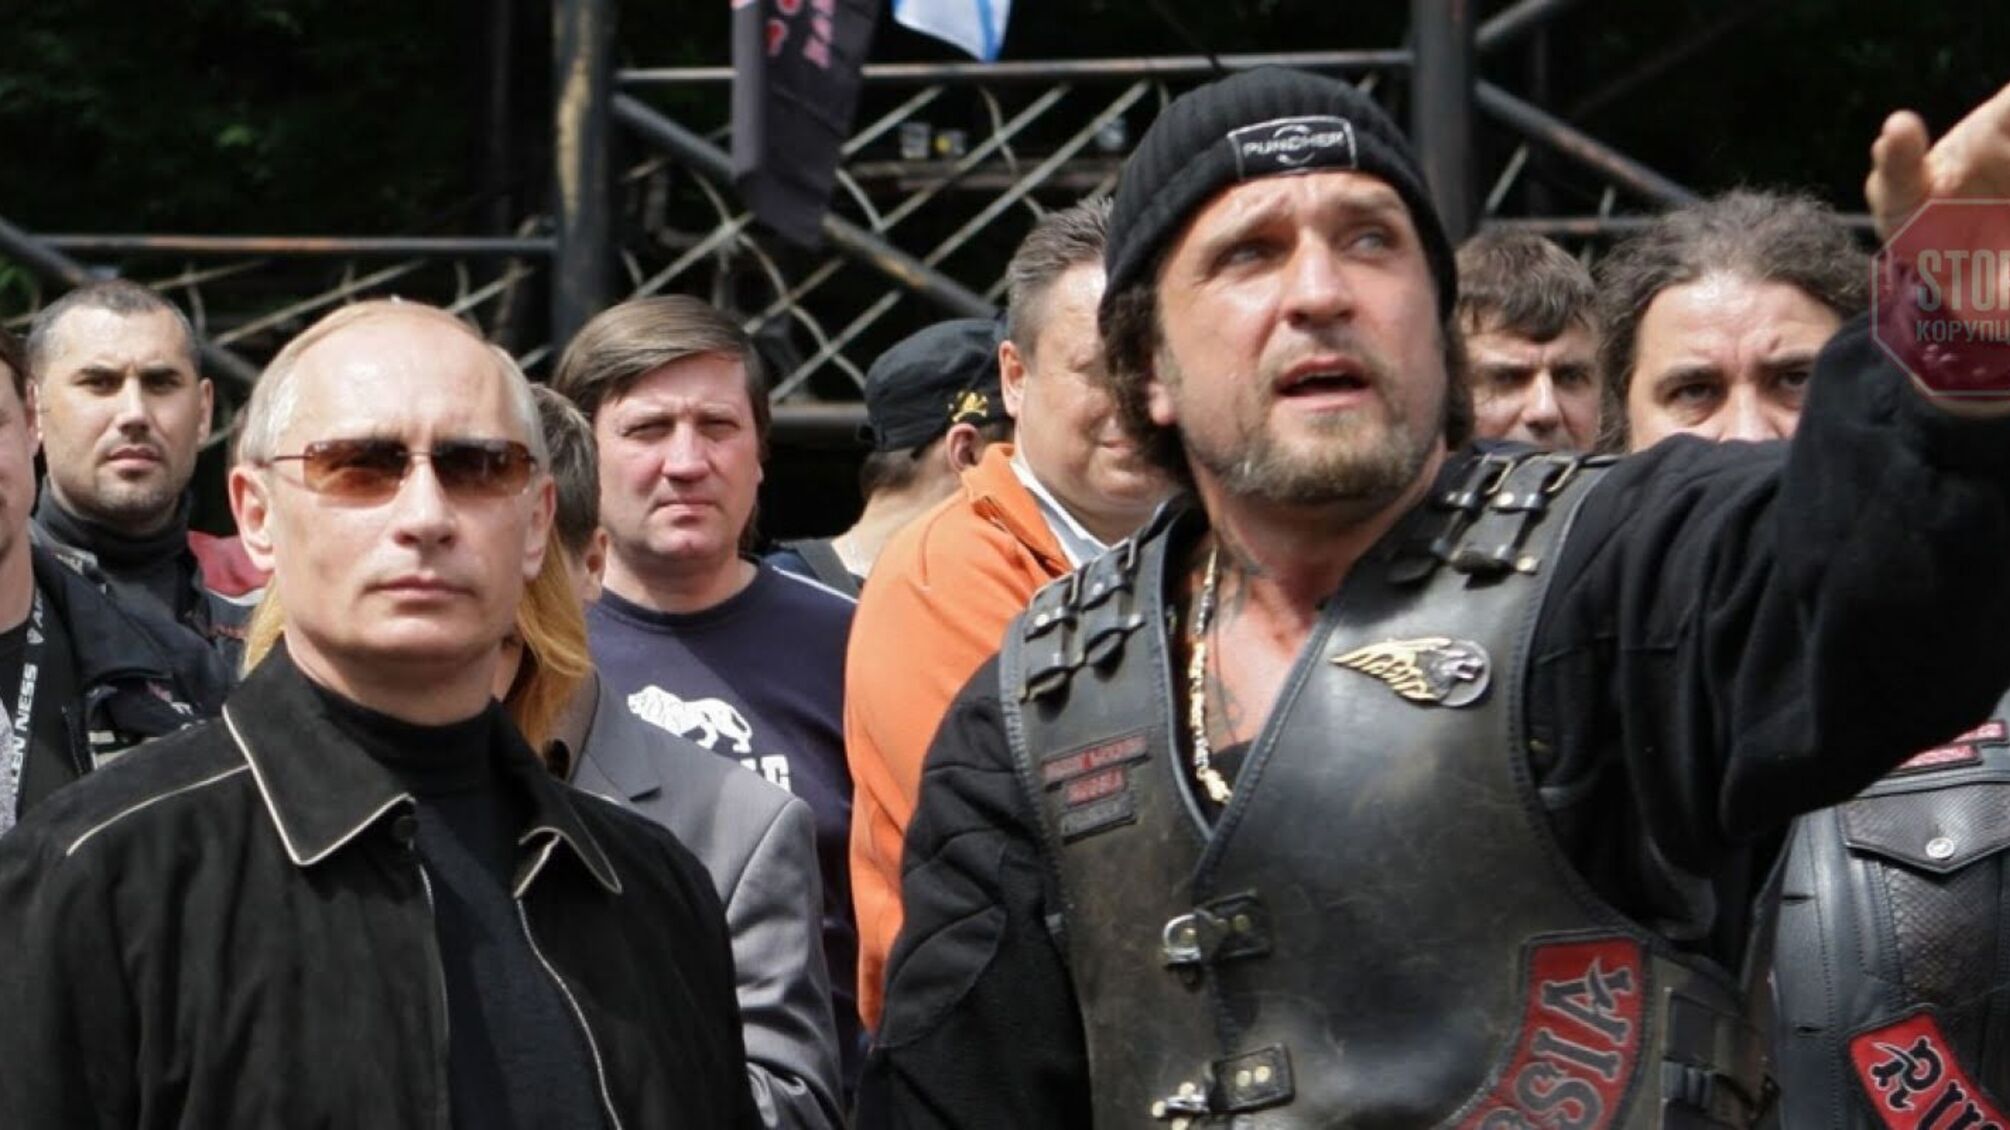 Байкери Путіна 'Нічні вовки' зібралися в окупований Донецьк розважати бойовиків